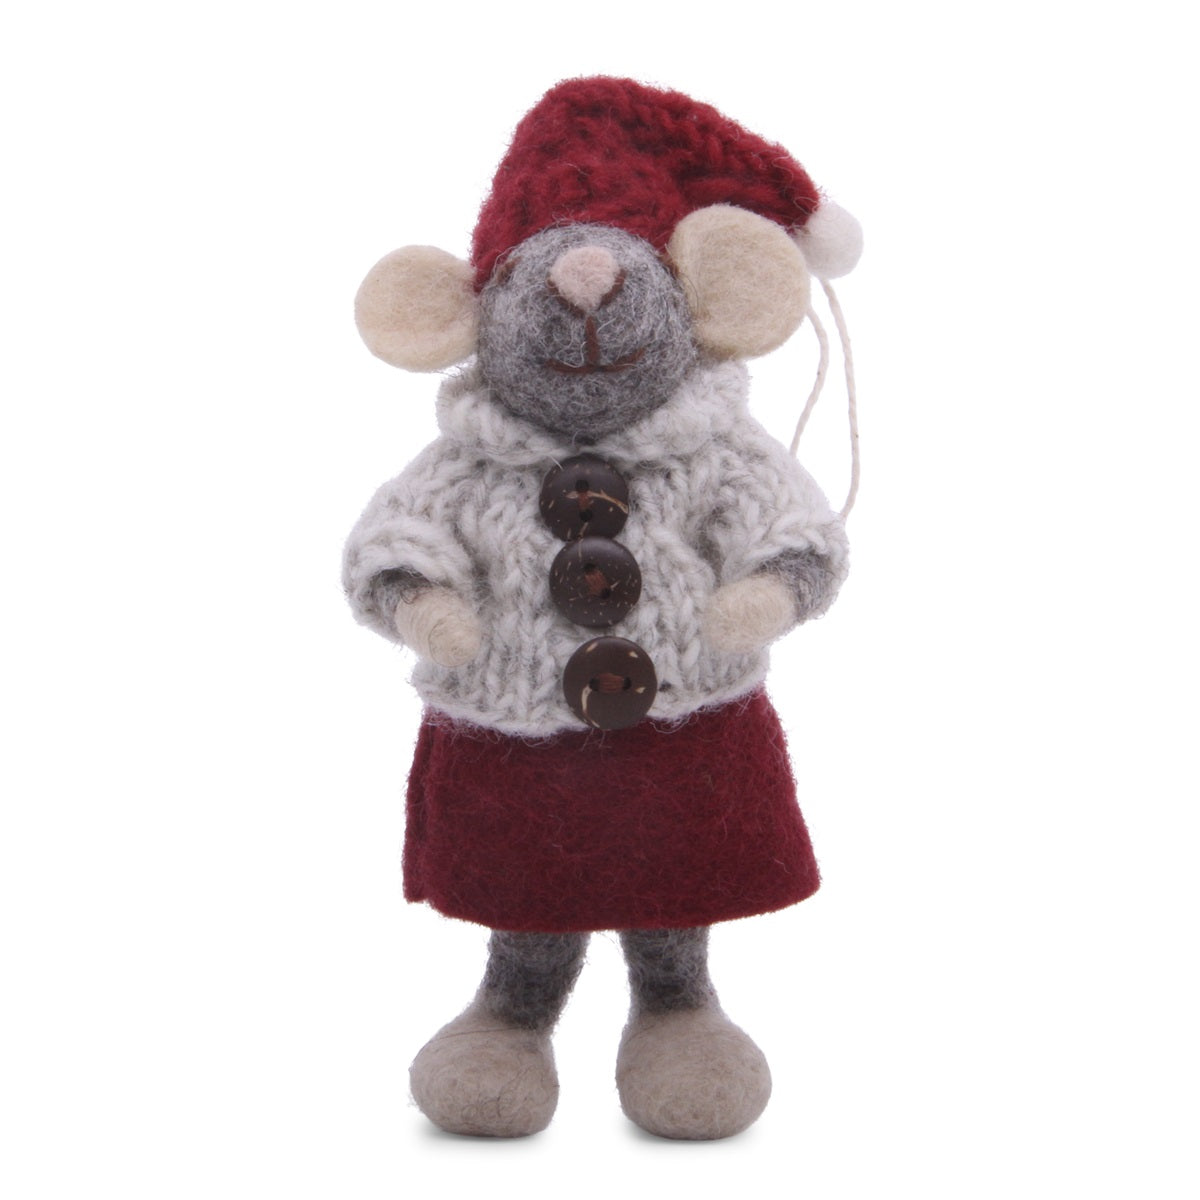 Anhänger - Kleine graue Girly-Maus mit rotem Hut, Kleid und hellgrauer Jacke